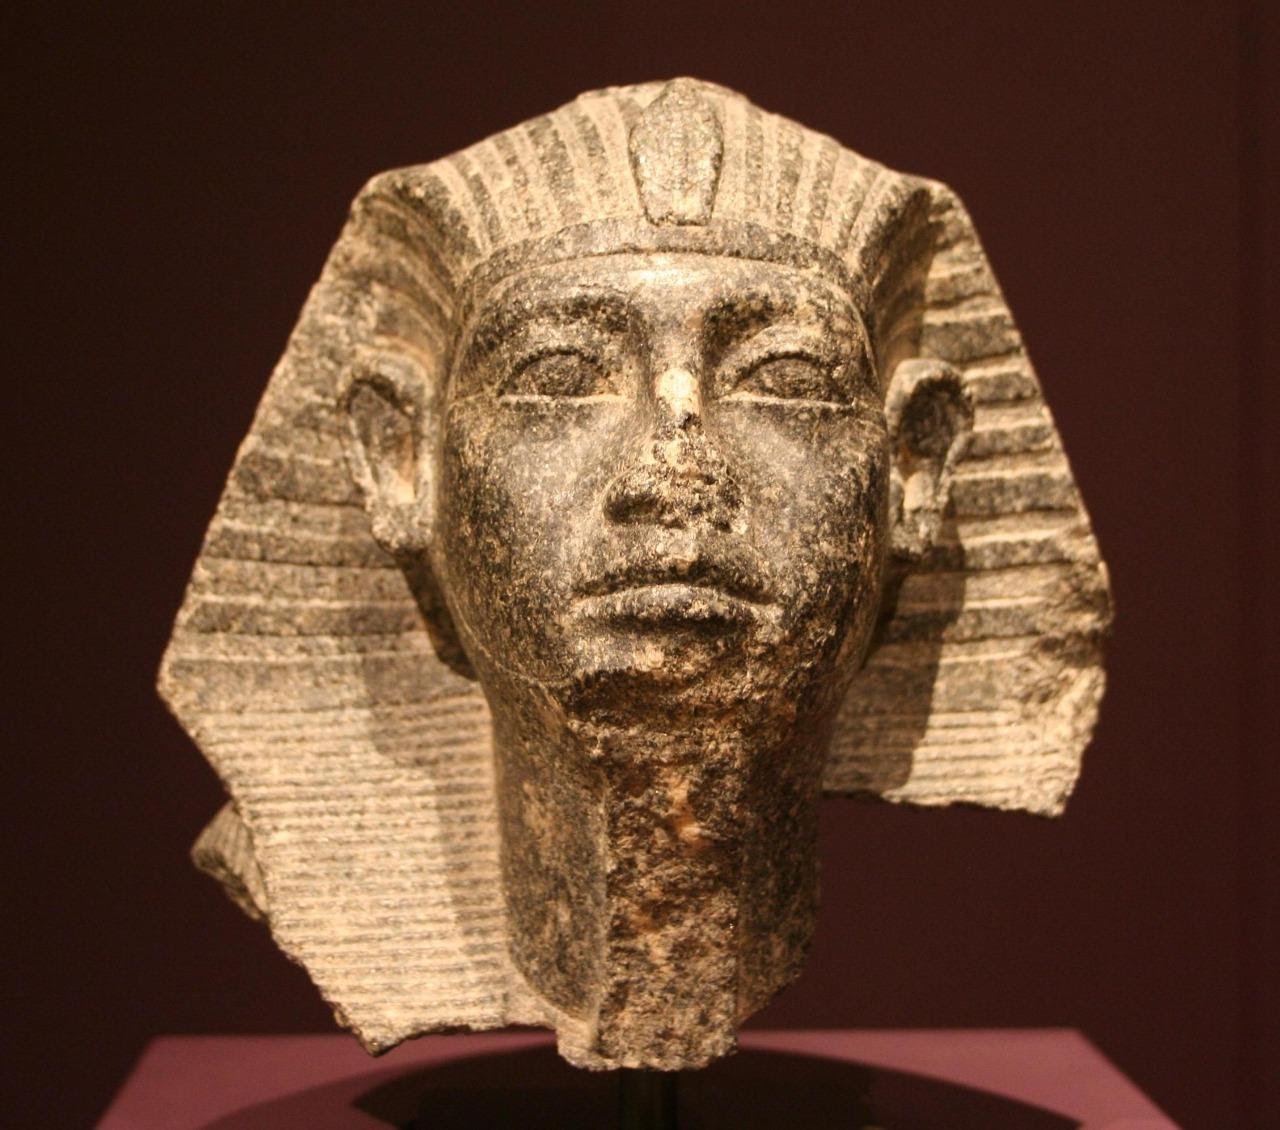 الأفارقة هم من بنوا الحضارة المصرية القديمة و الأهرامات!! Image1-32